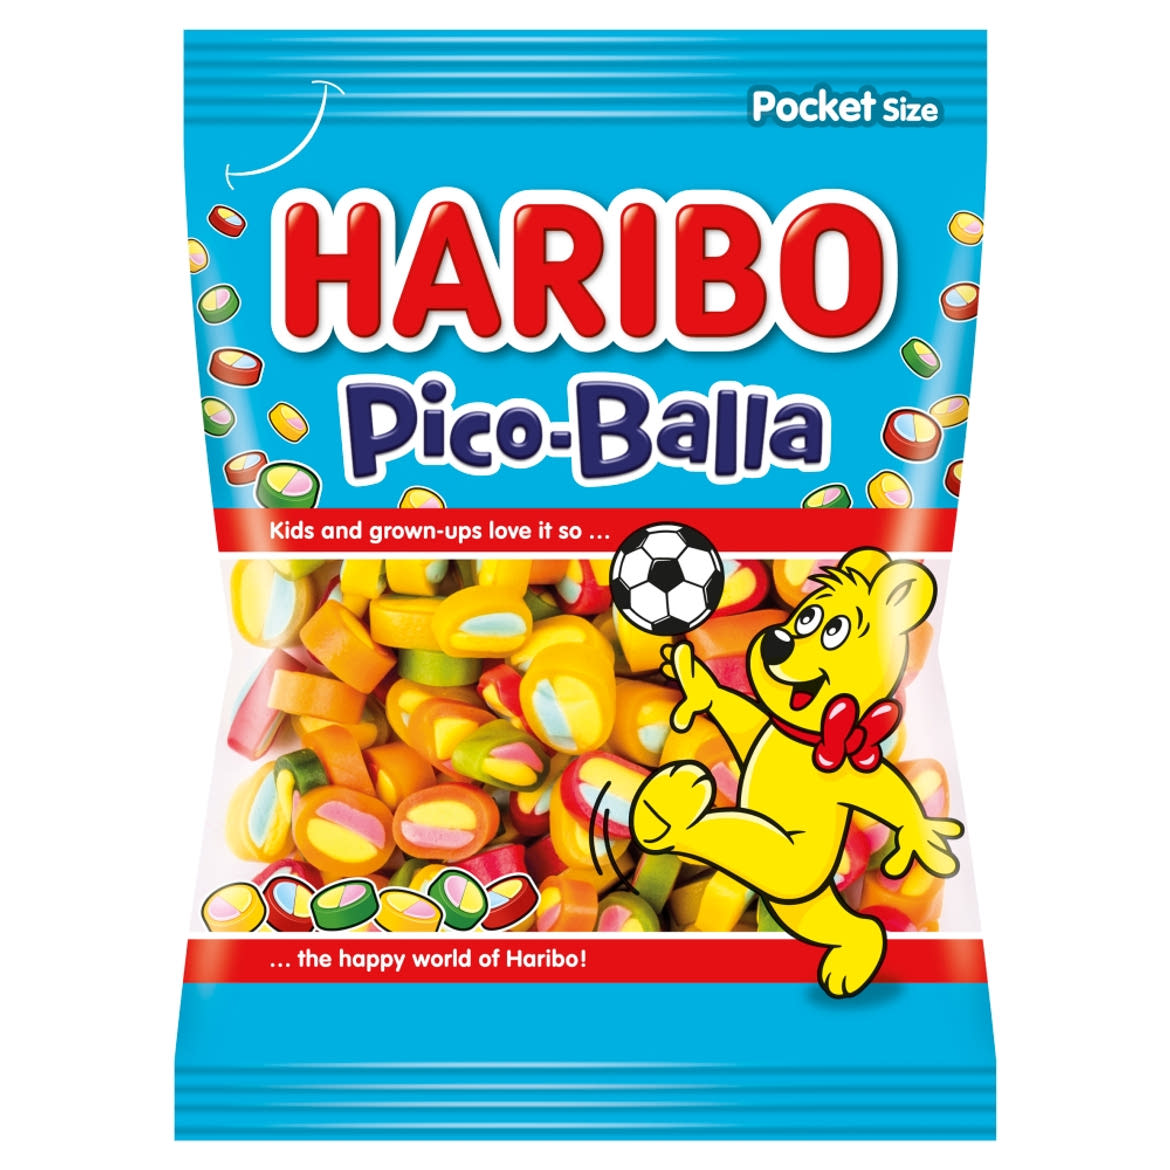 Haribo Pico Balla gyümölcsízű gumicukorka